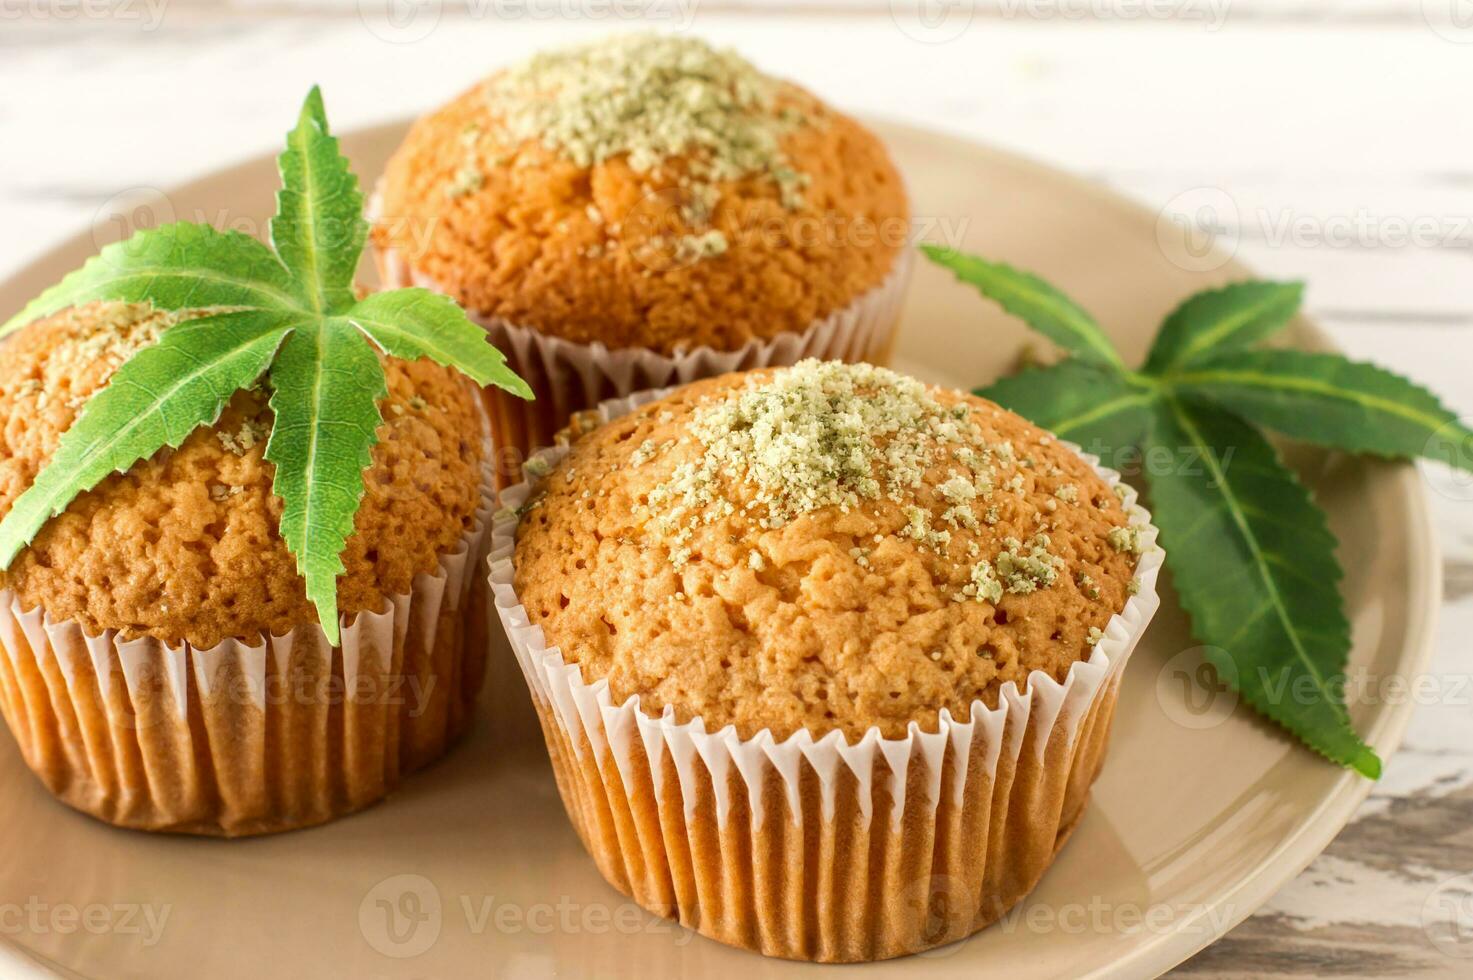 petit gâteau avec de la marijuana. muffins cupcake savoureux avec de l'herbe de cannabis cbd. drogues à base de marijuana médicale dans les desserts alimentaires, légalisation de la ganja. photo